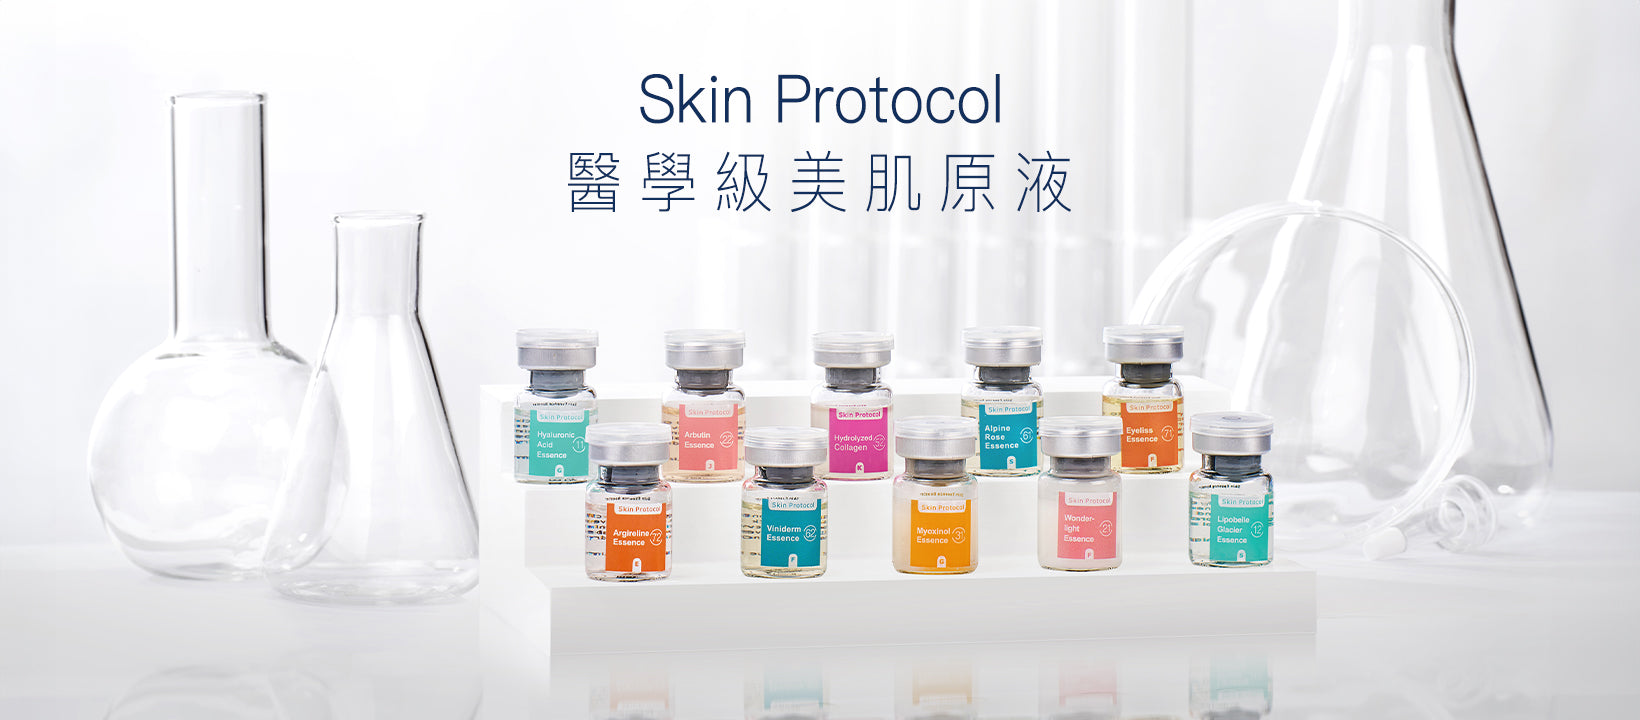 Skin Protocol